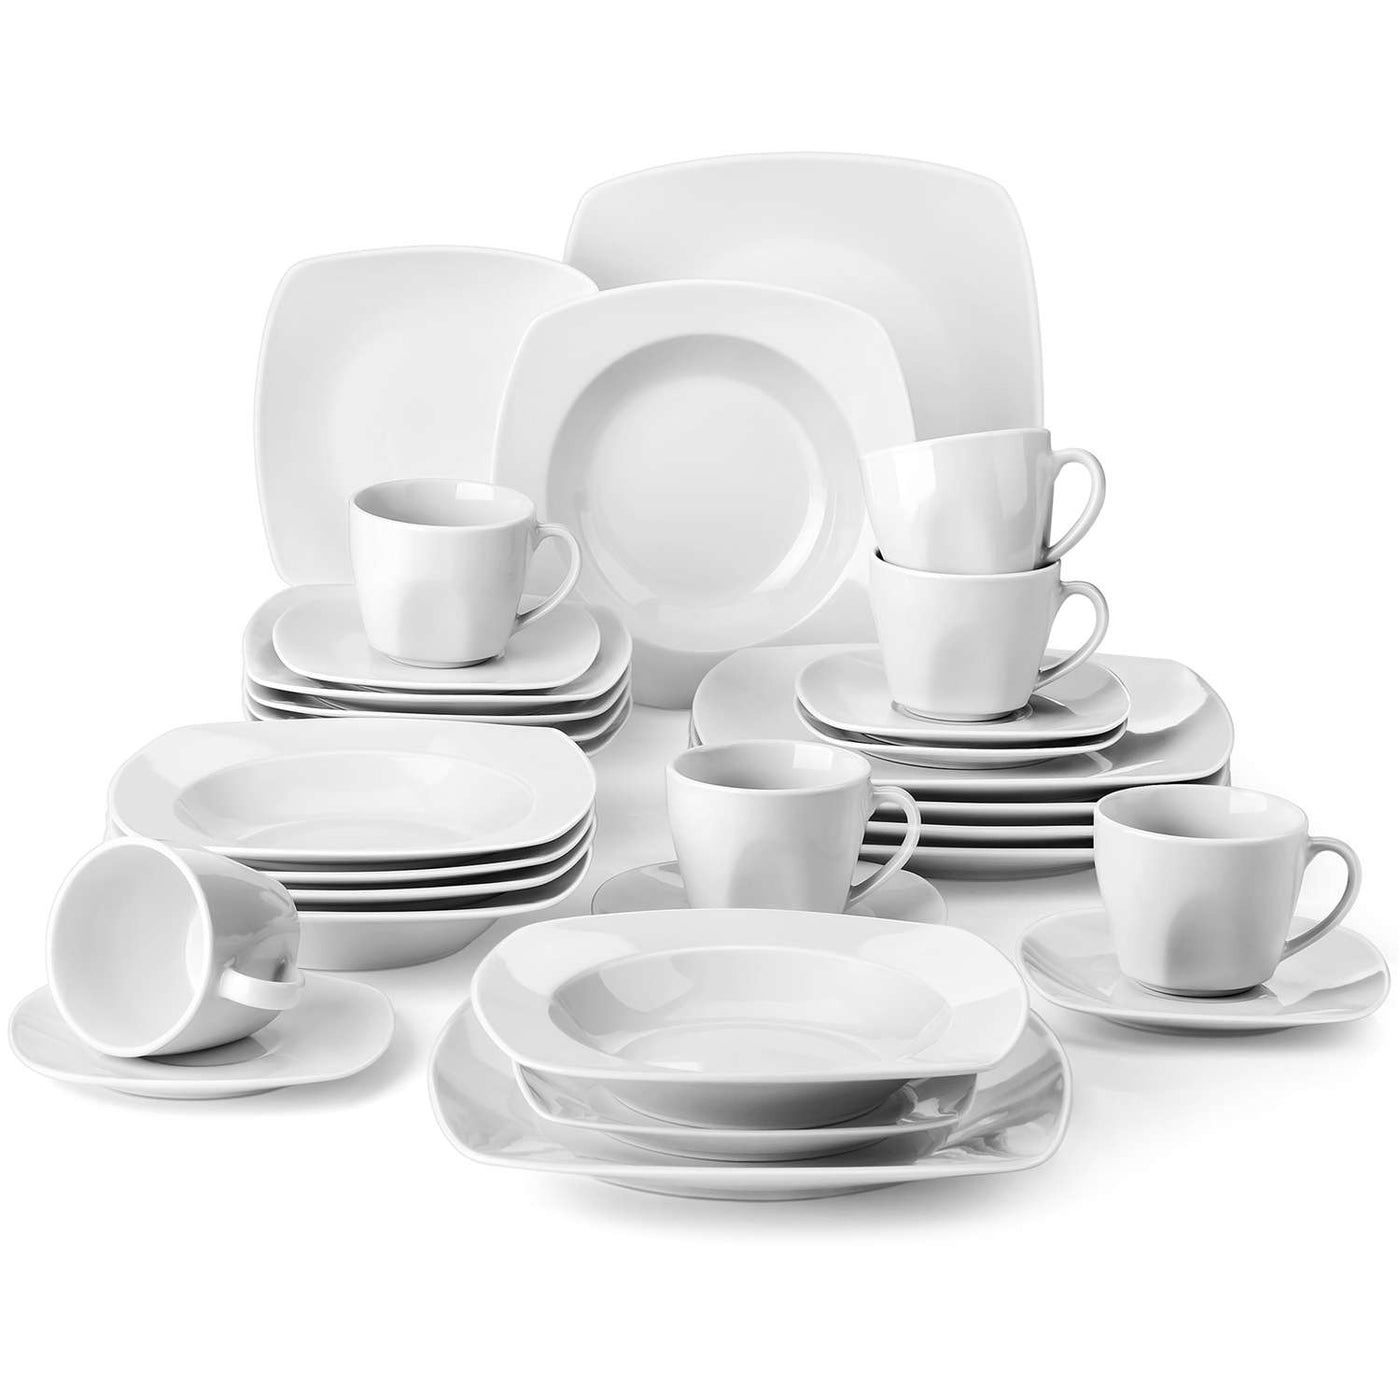 MALACASA Carina 30-Piece Porcelain Dinner Set with 6*Cups Saucers